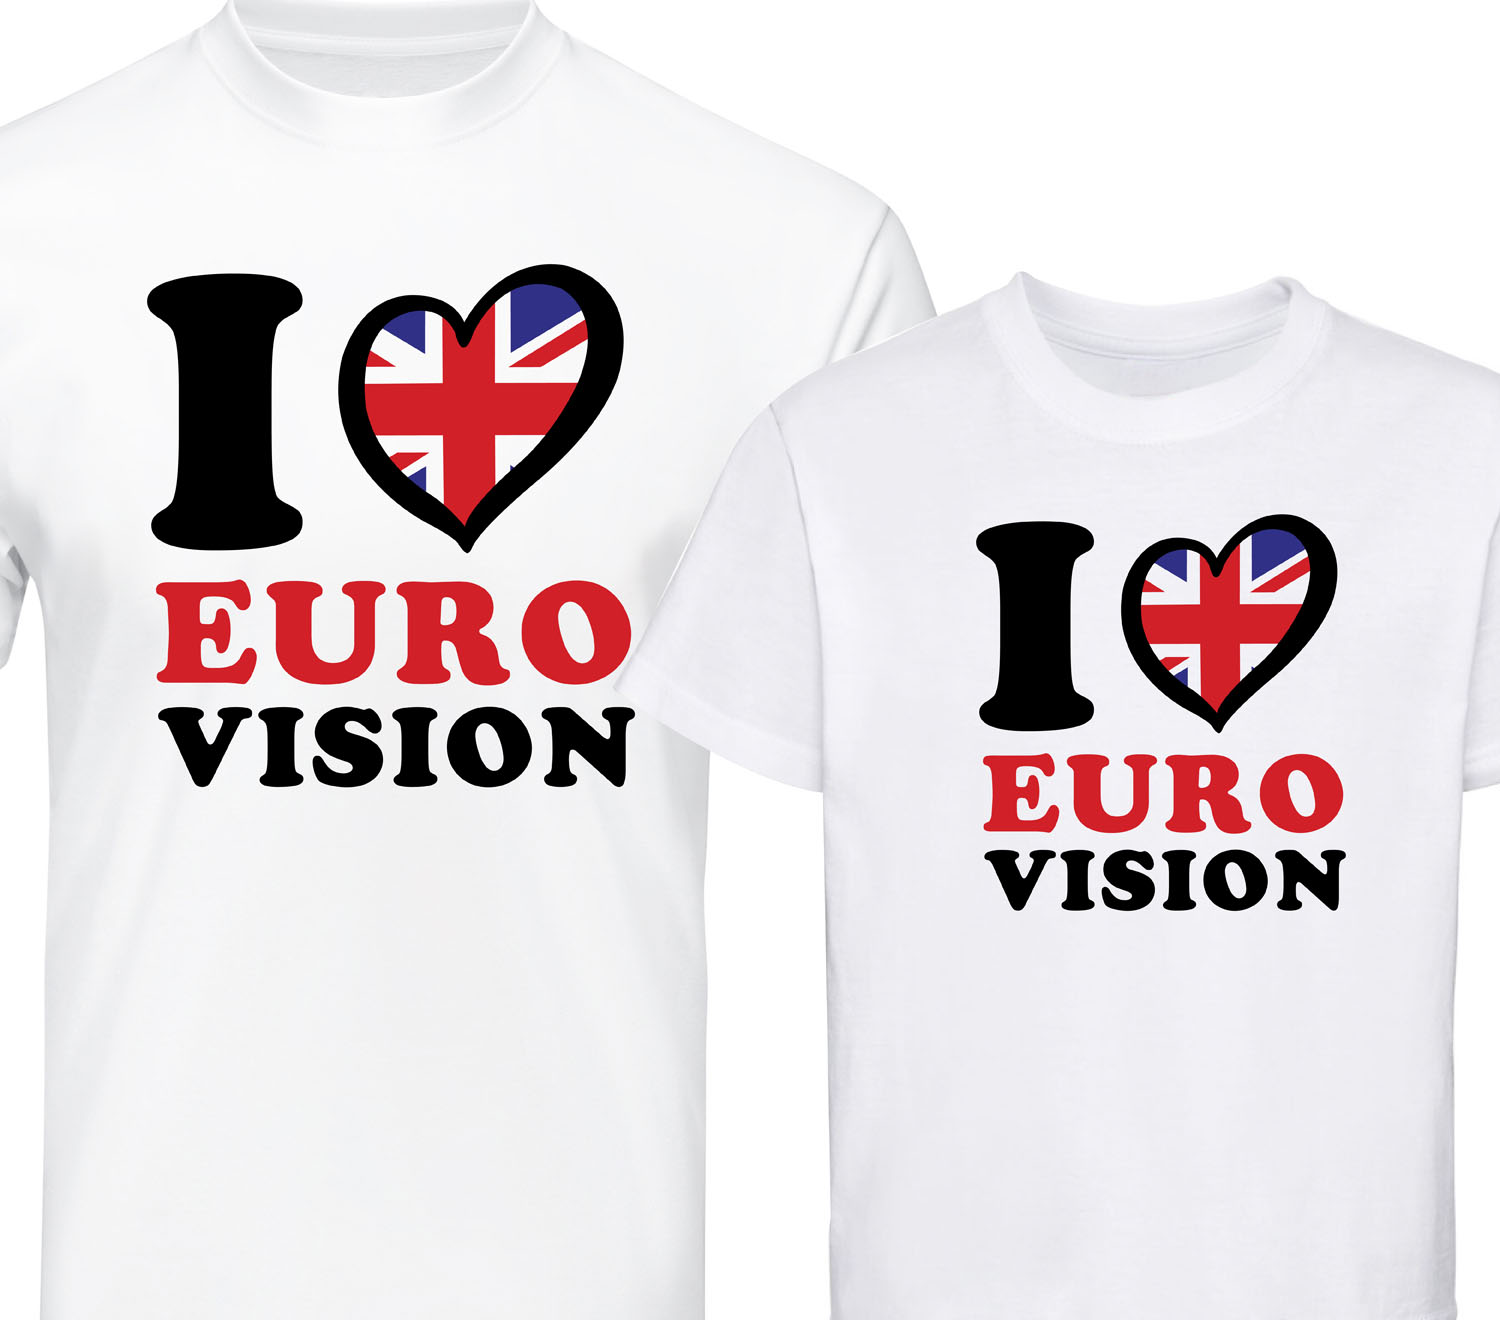 eurovision shirt